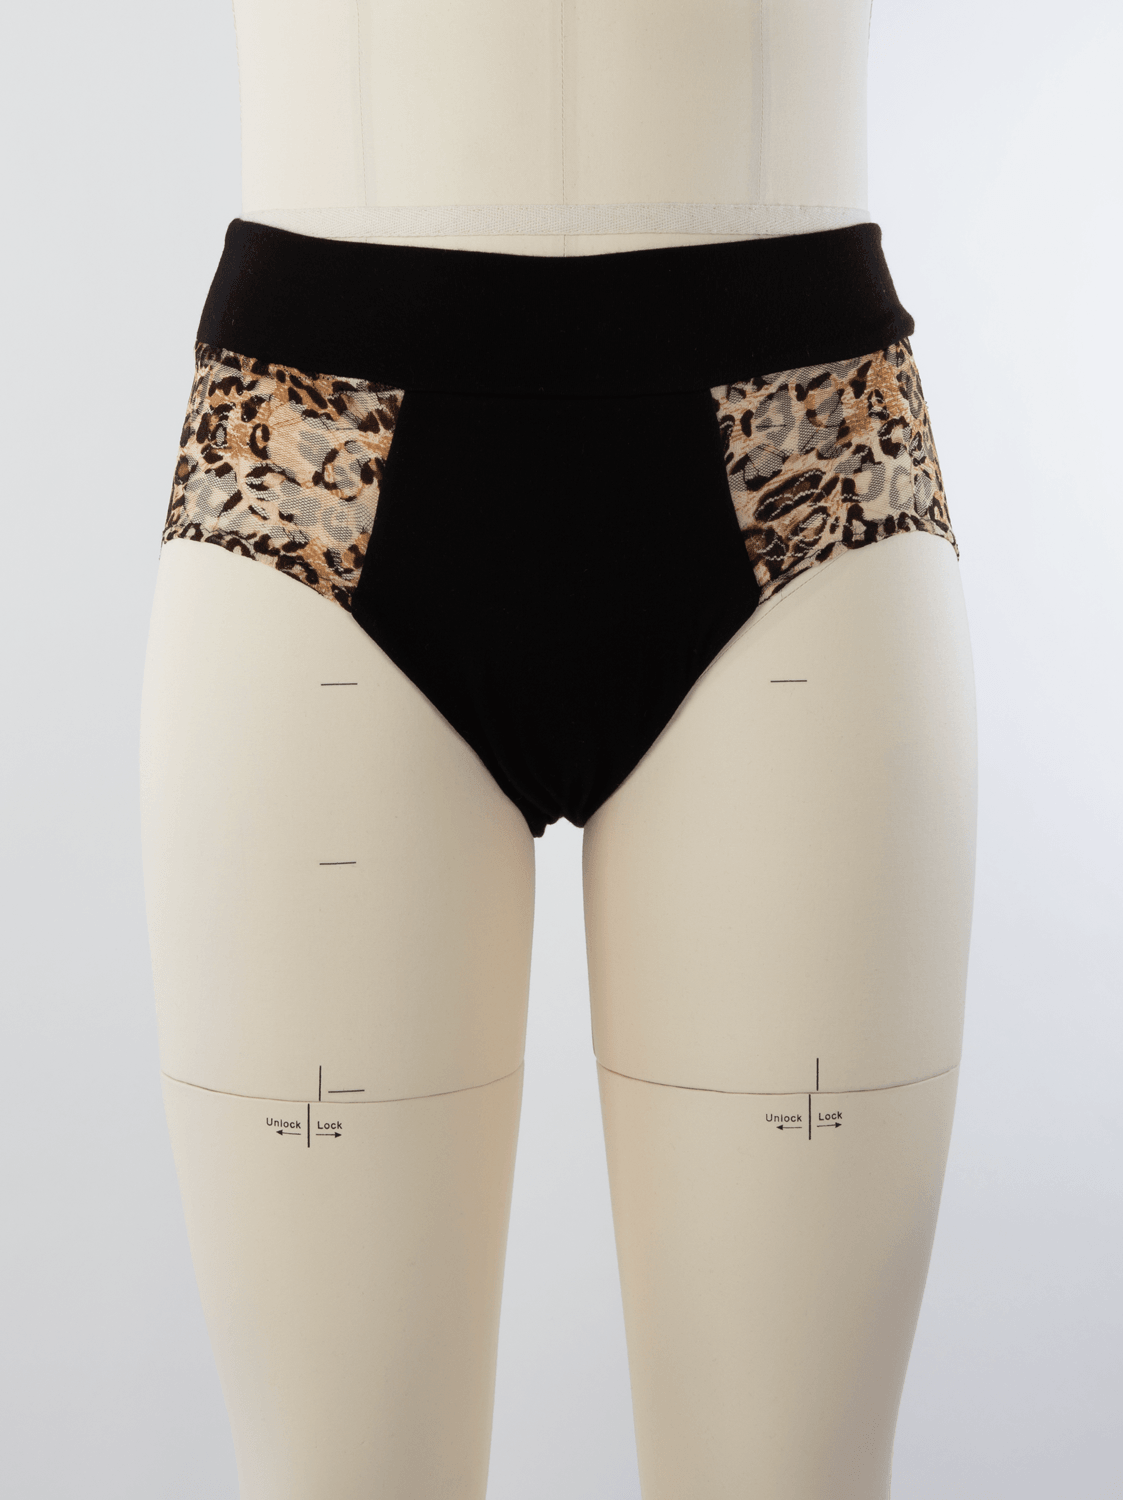 4344 // SARAH Period underwear and reusable pads - Jalie